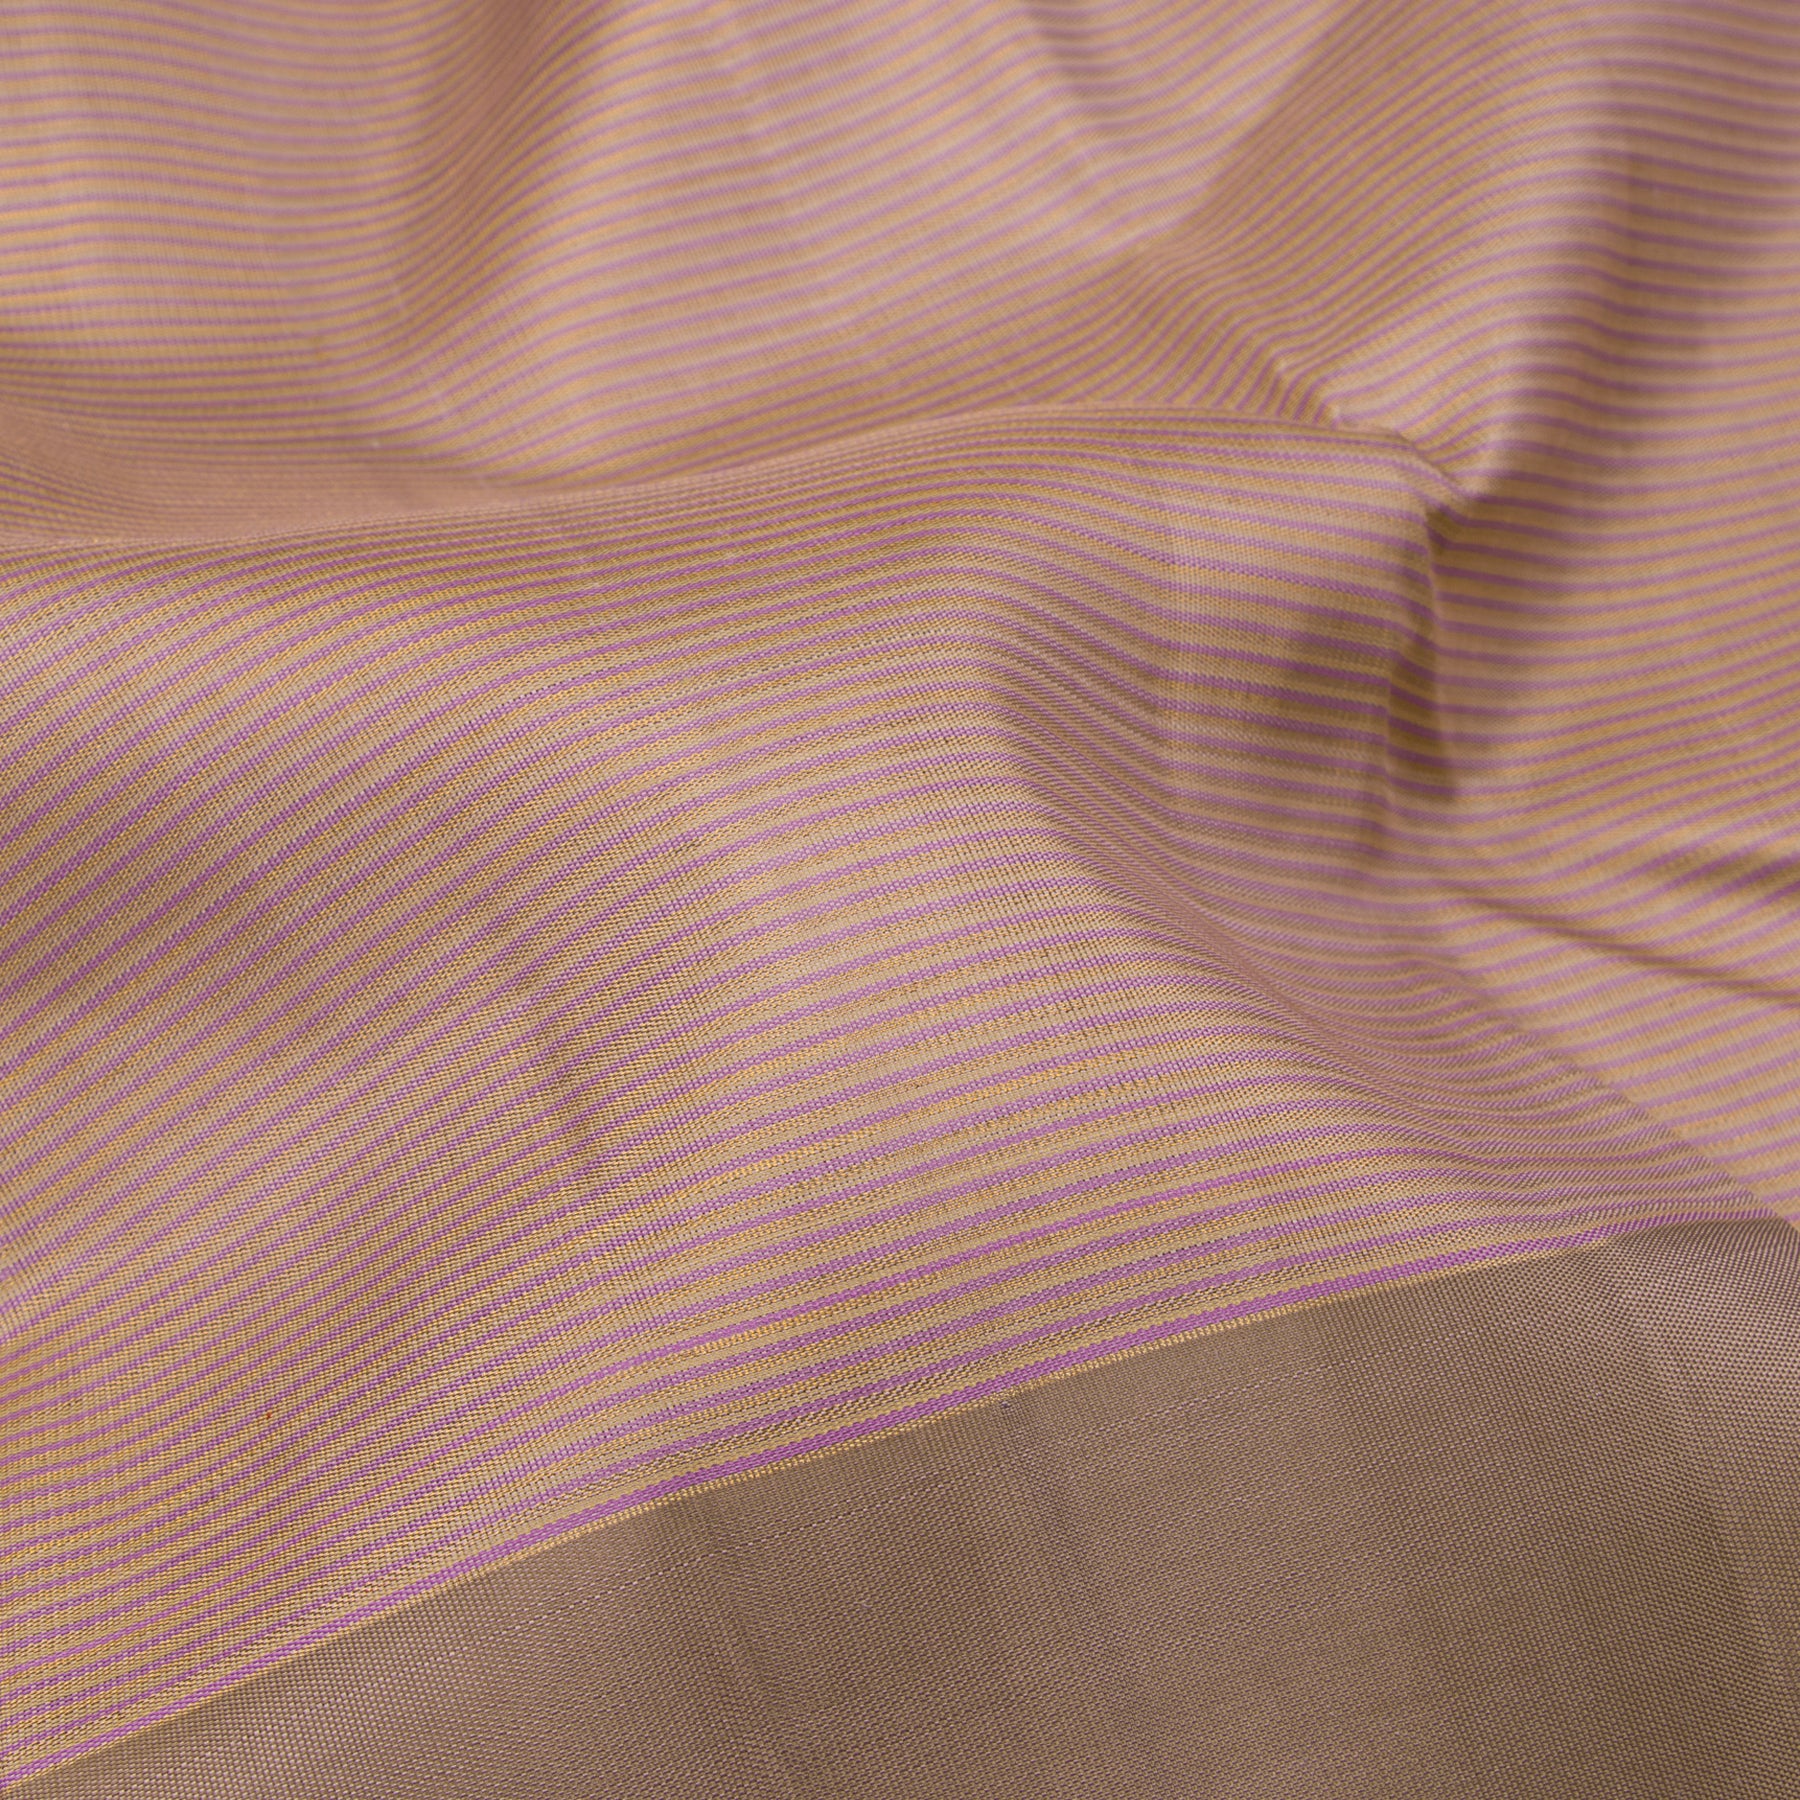 Kanakavalli Kanjivaram Silk Sari 22-041-HS001-10392 - Fabric View